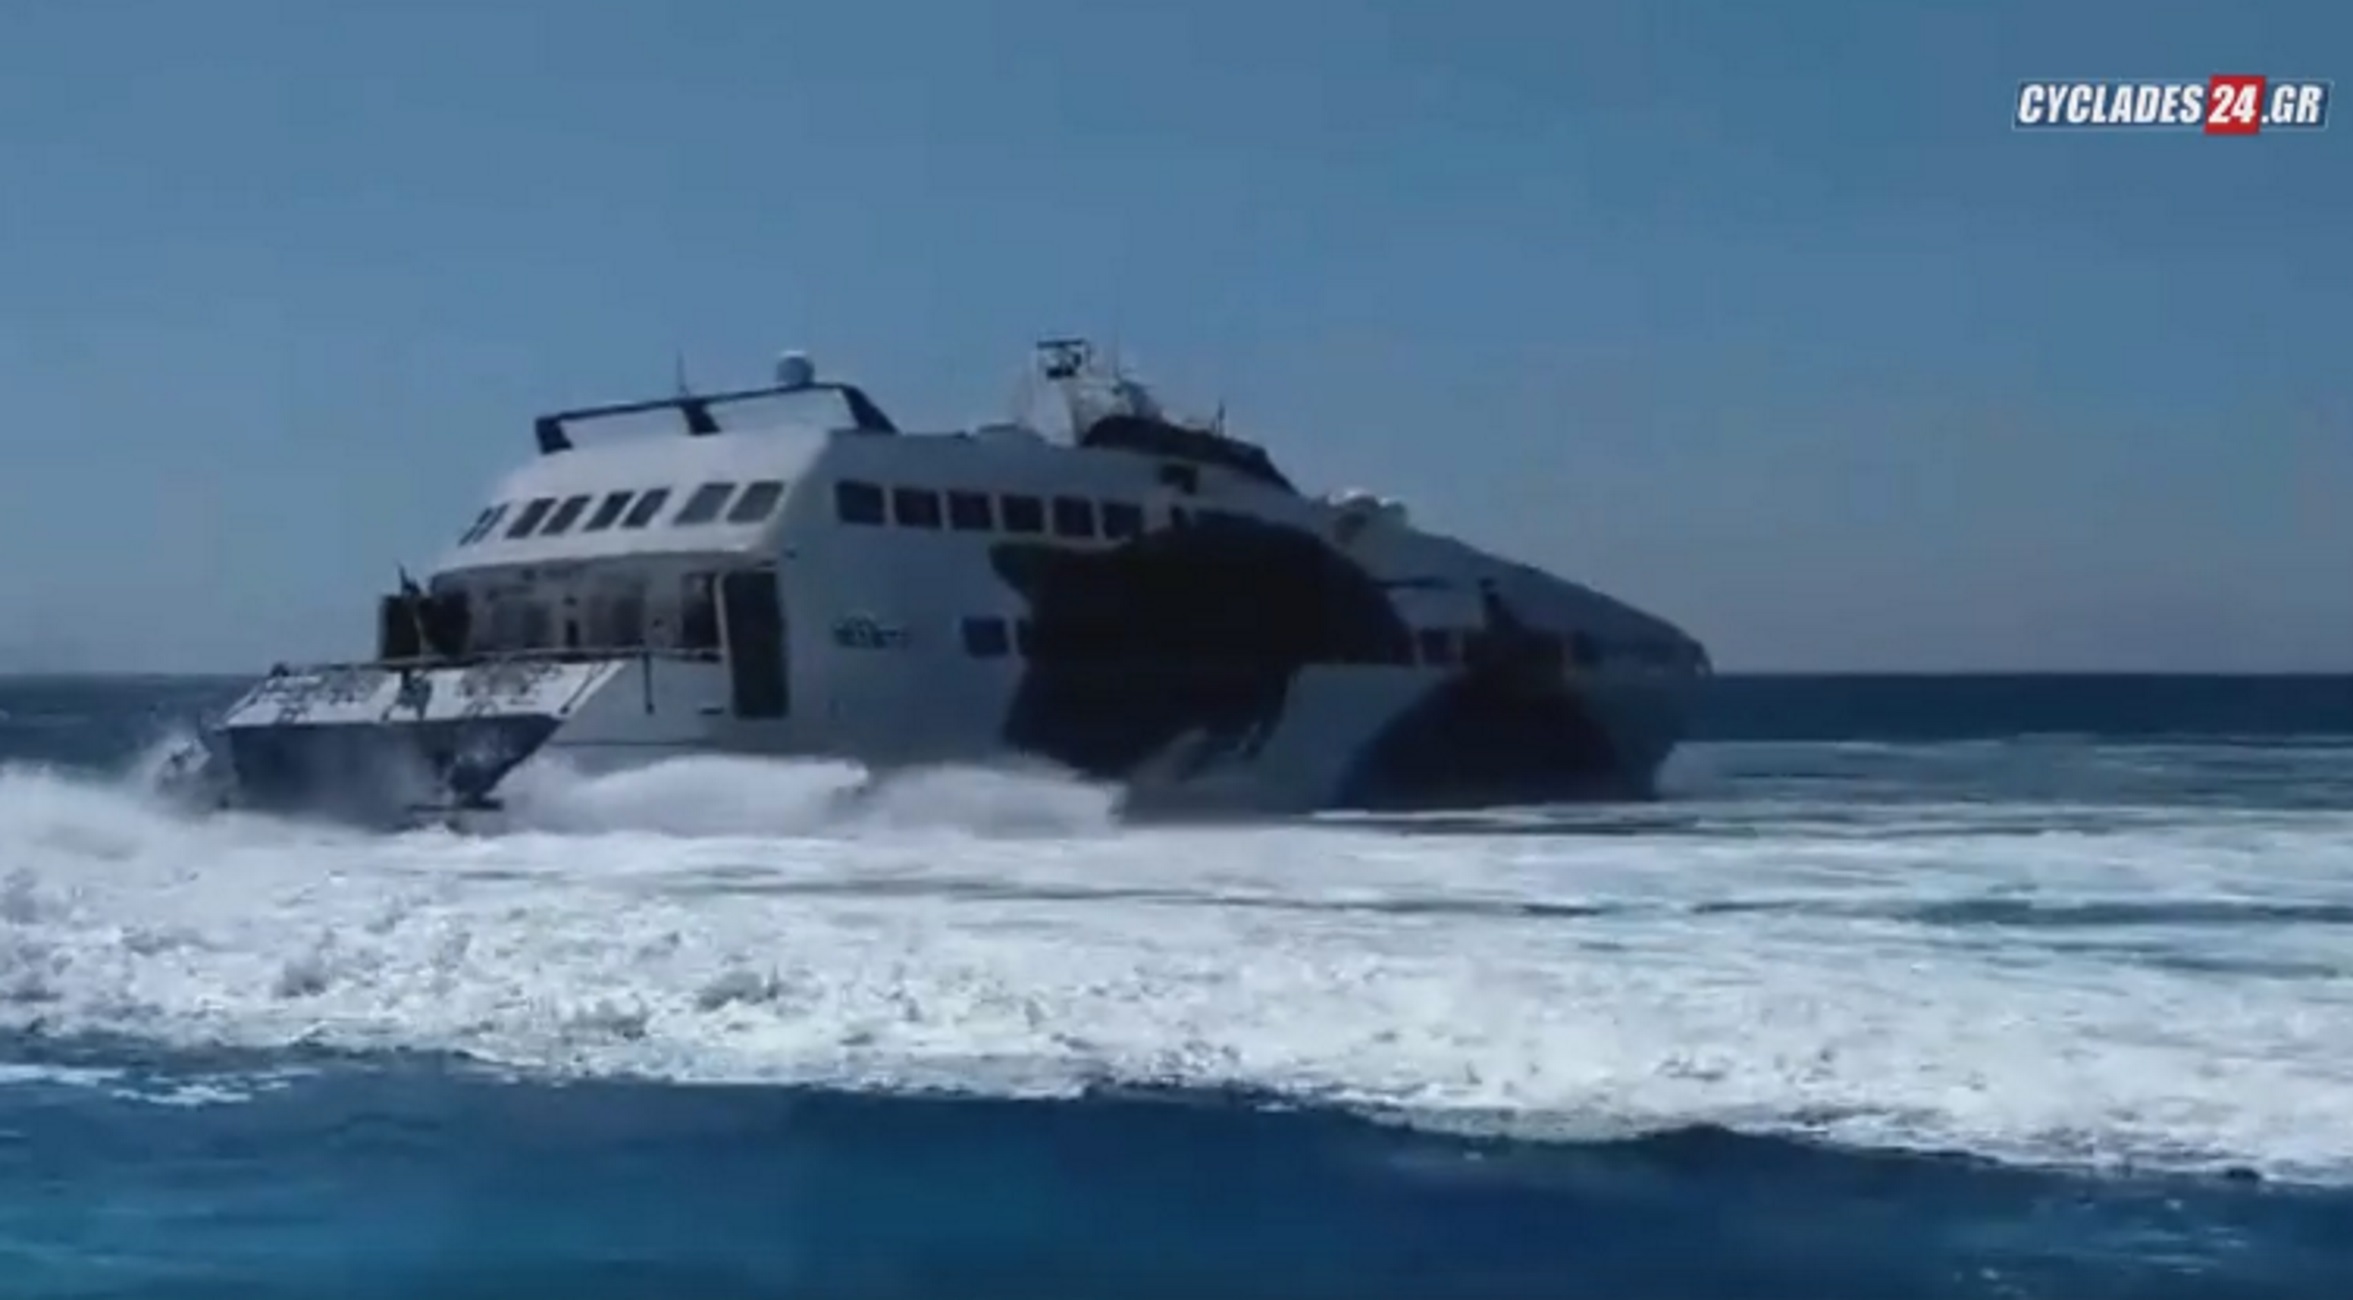 Σίκινος: Ο καπετάνιος έκανε αυτό που περίμεναν όλοι στο λιμάνι! Συγκίνηση και χειροκροτήματα (Βίντεο)